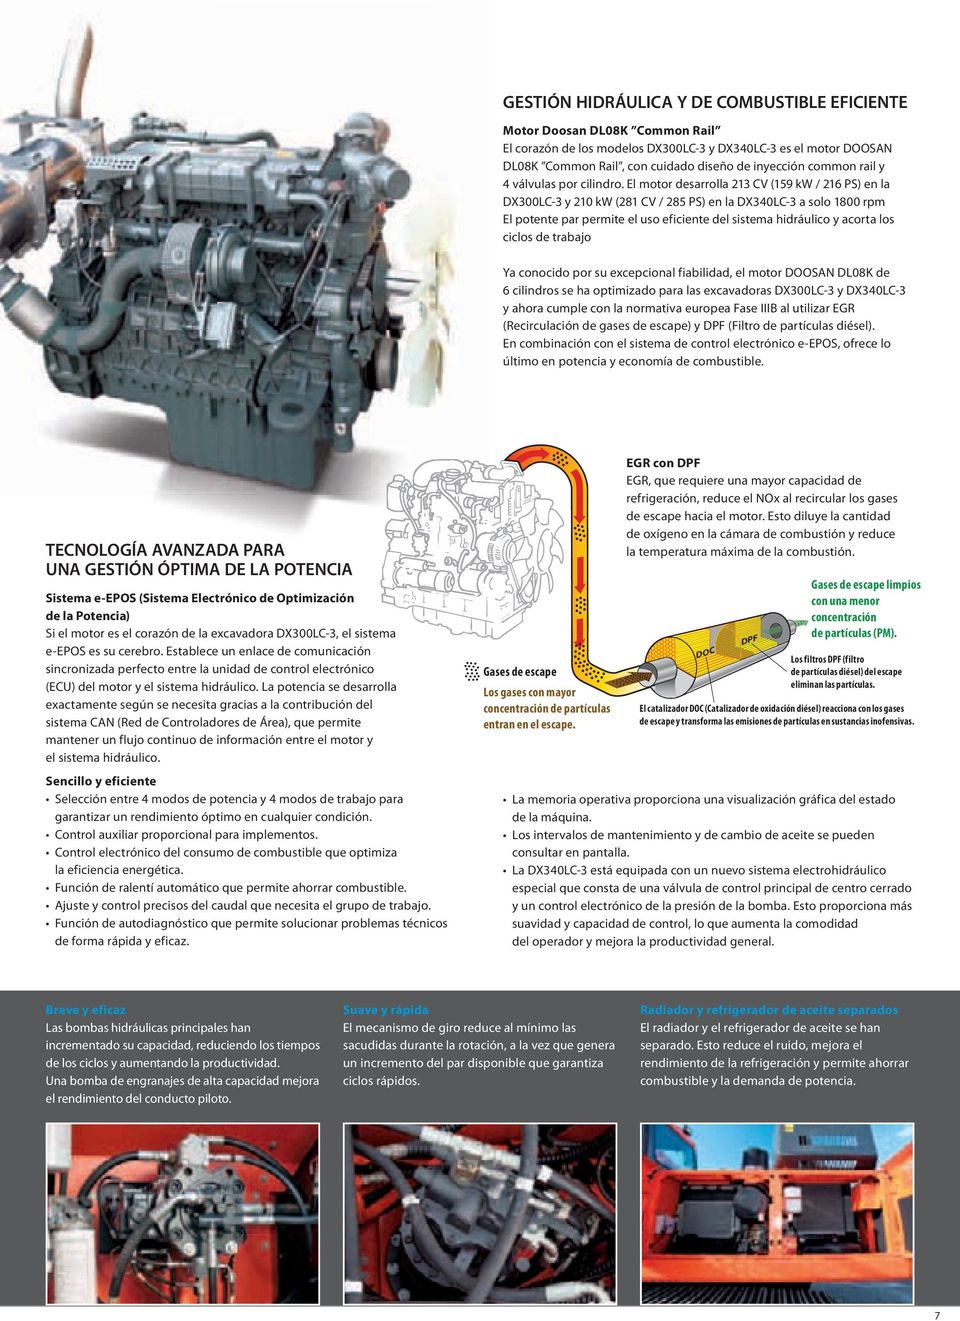 El motor desarrolla 213 CV (159 kw / 216 PS) en la DX300LC-3 y 210 kw (281 CV / 285 PS) en la DX340LC-3 a solo 1800 rpm El potente par permite el uso eficiente del sistema hidráulico y acorta los